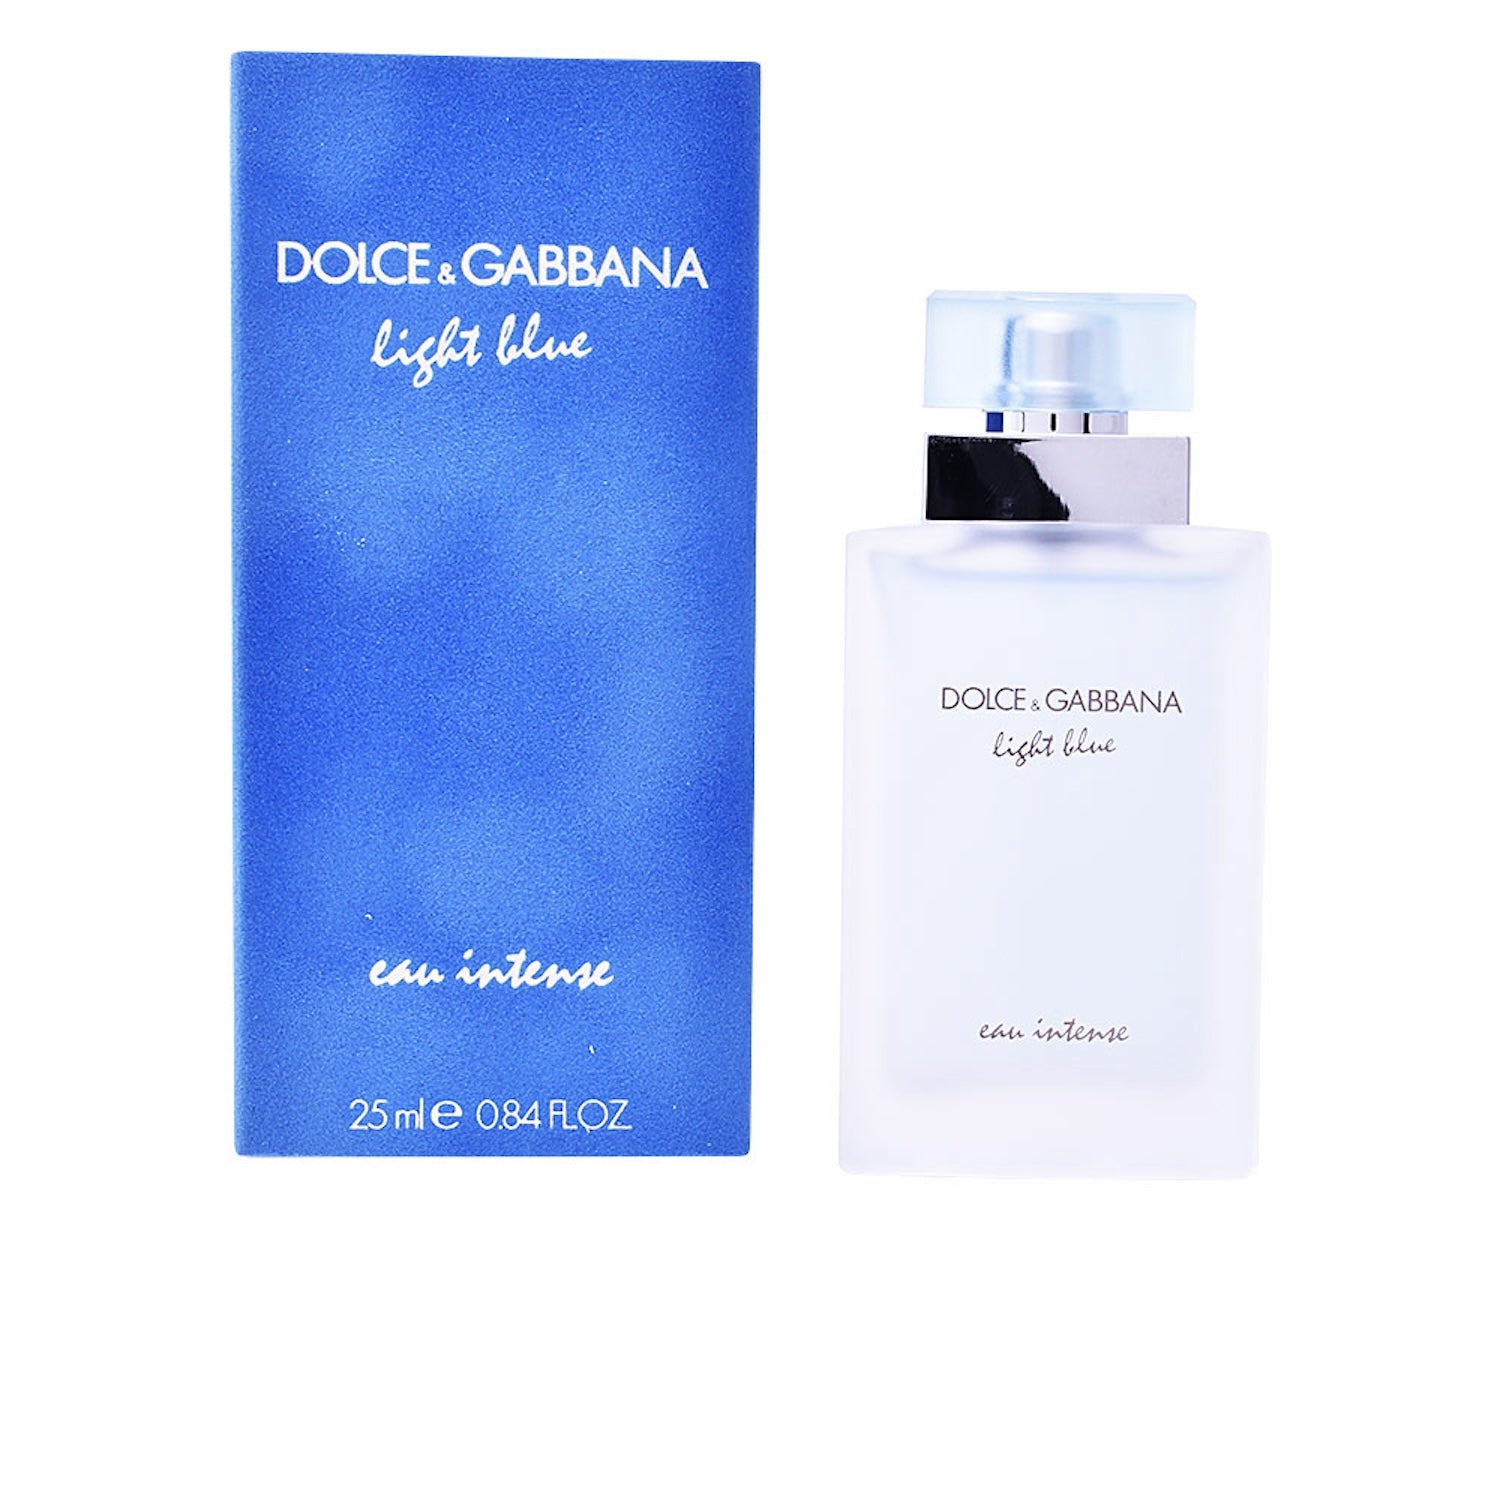 DOLCE & GABBANA LIGHT BLUE EAU INTENSE Eau de Parfum Spray